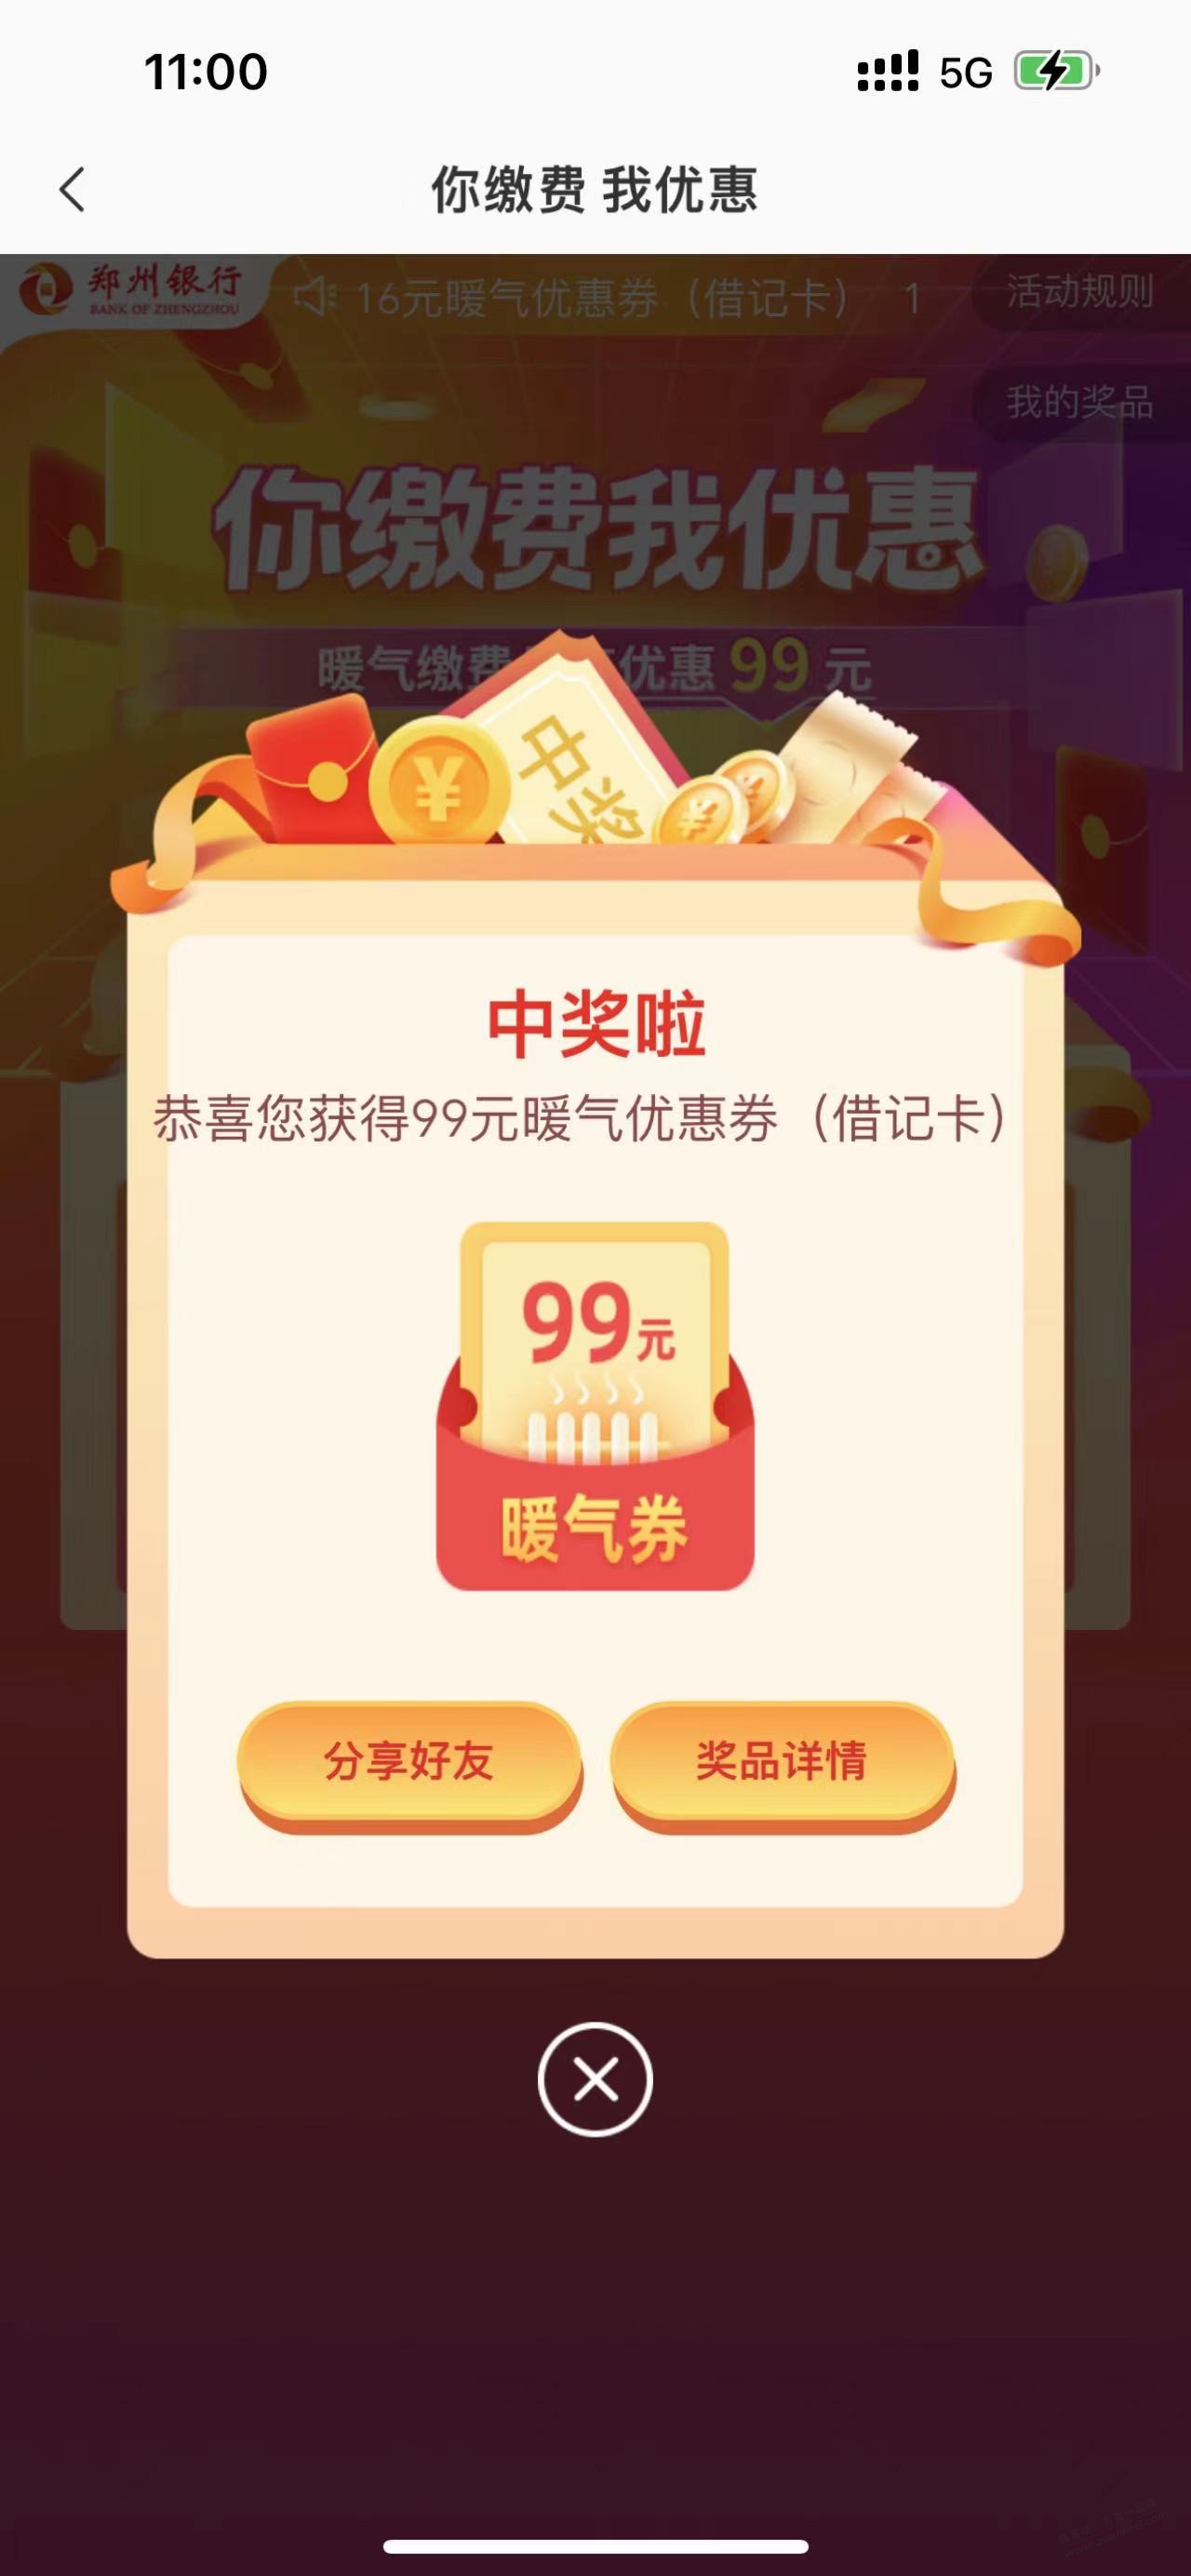 郑州银行99元毛-惠小助(52huixz.com)